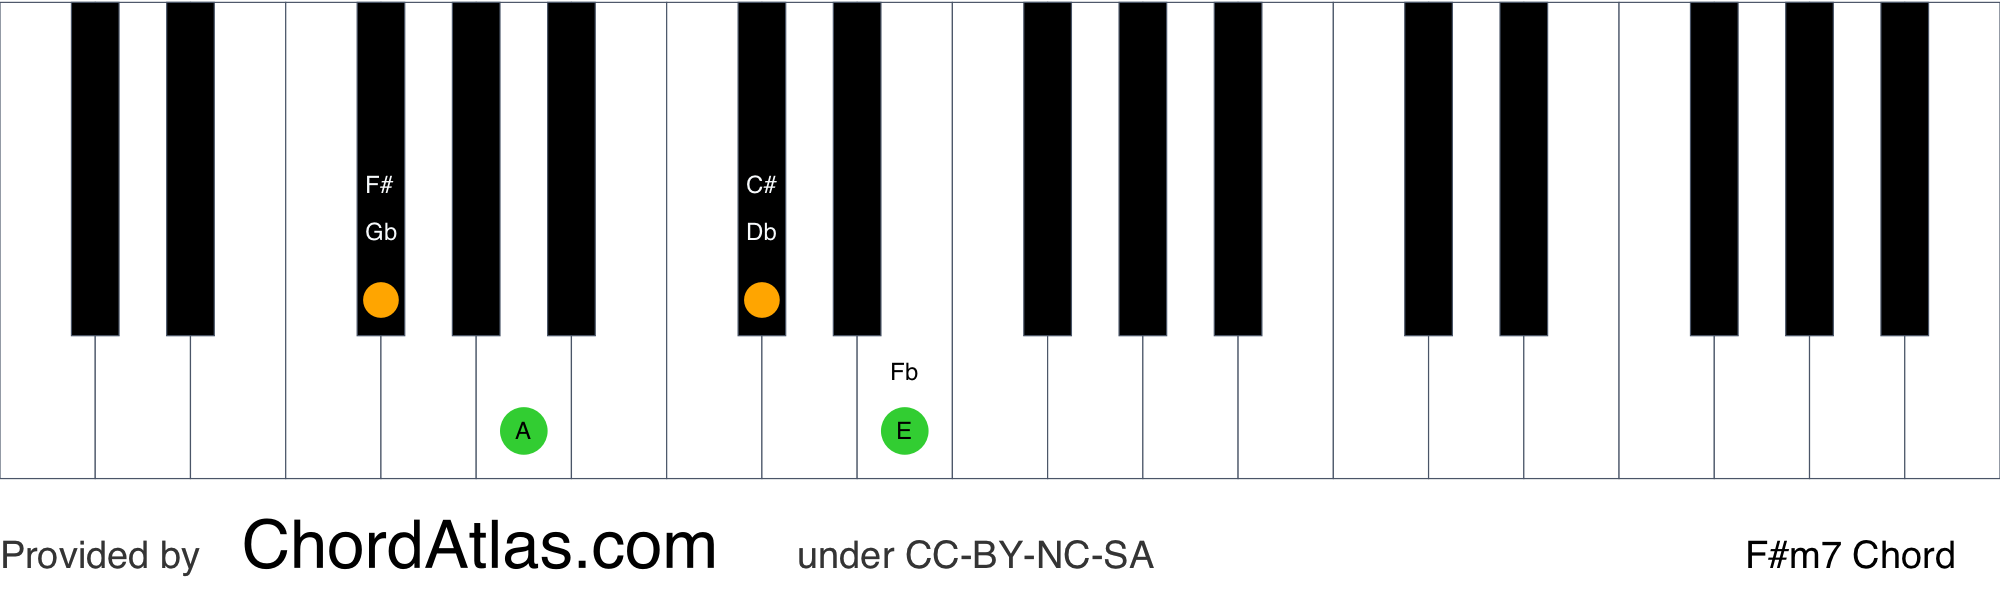 piano chord notes